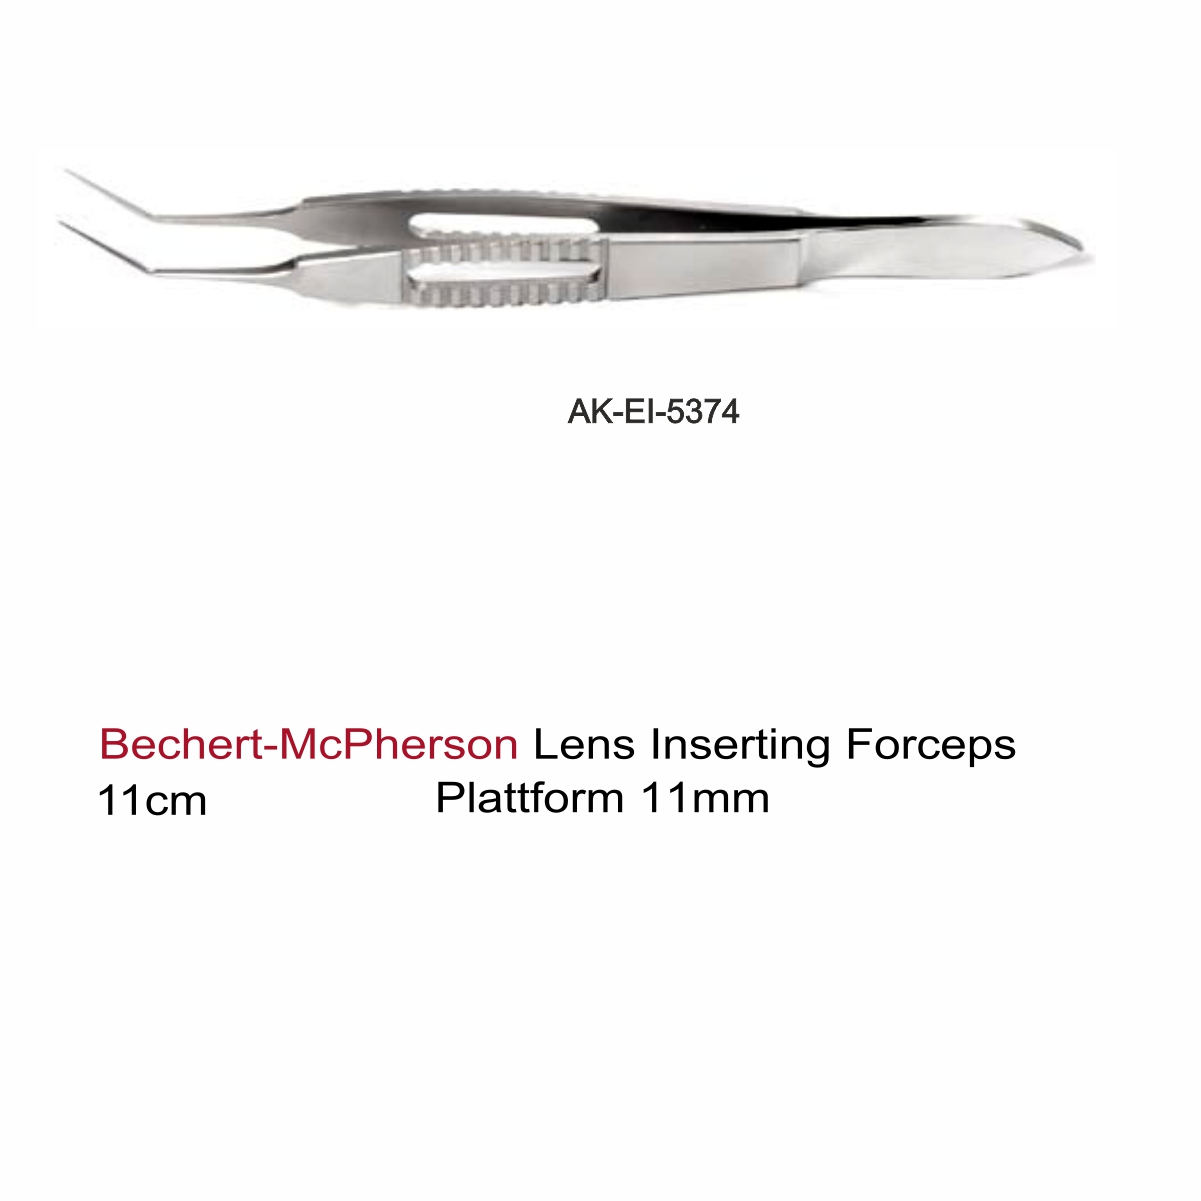 Bechert-McPherson Lens Inserting Forceps